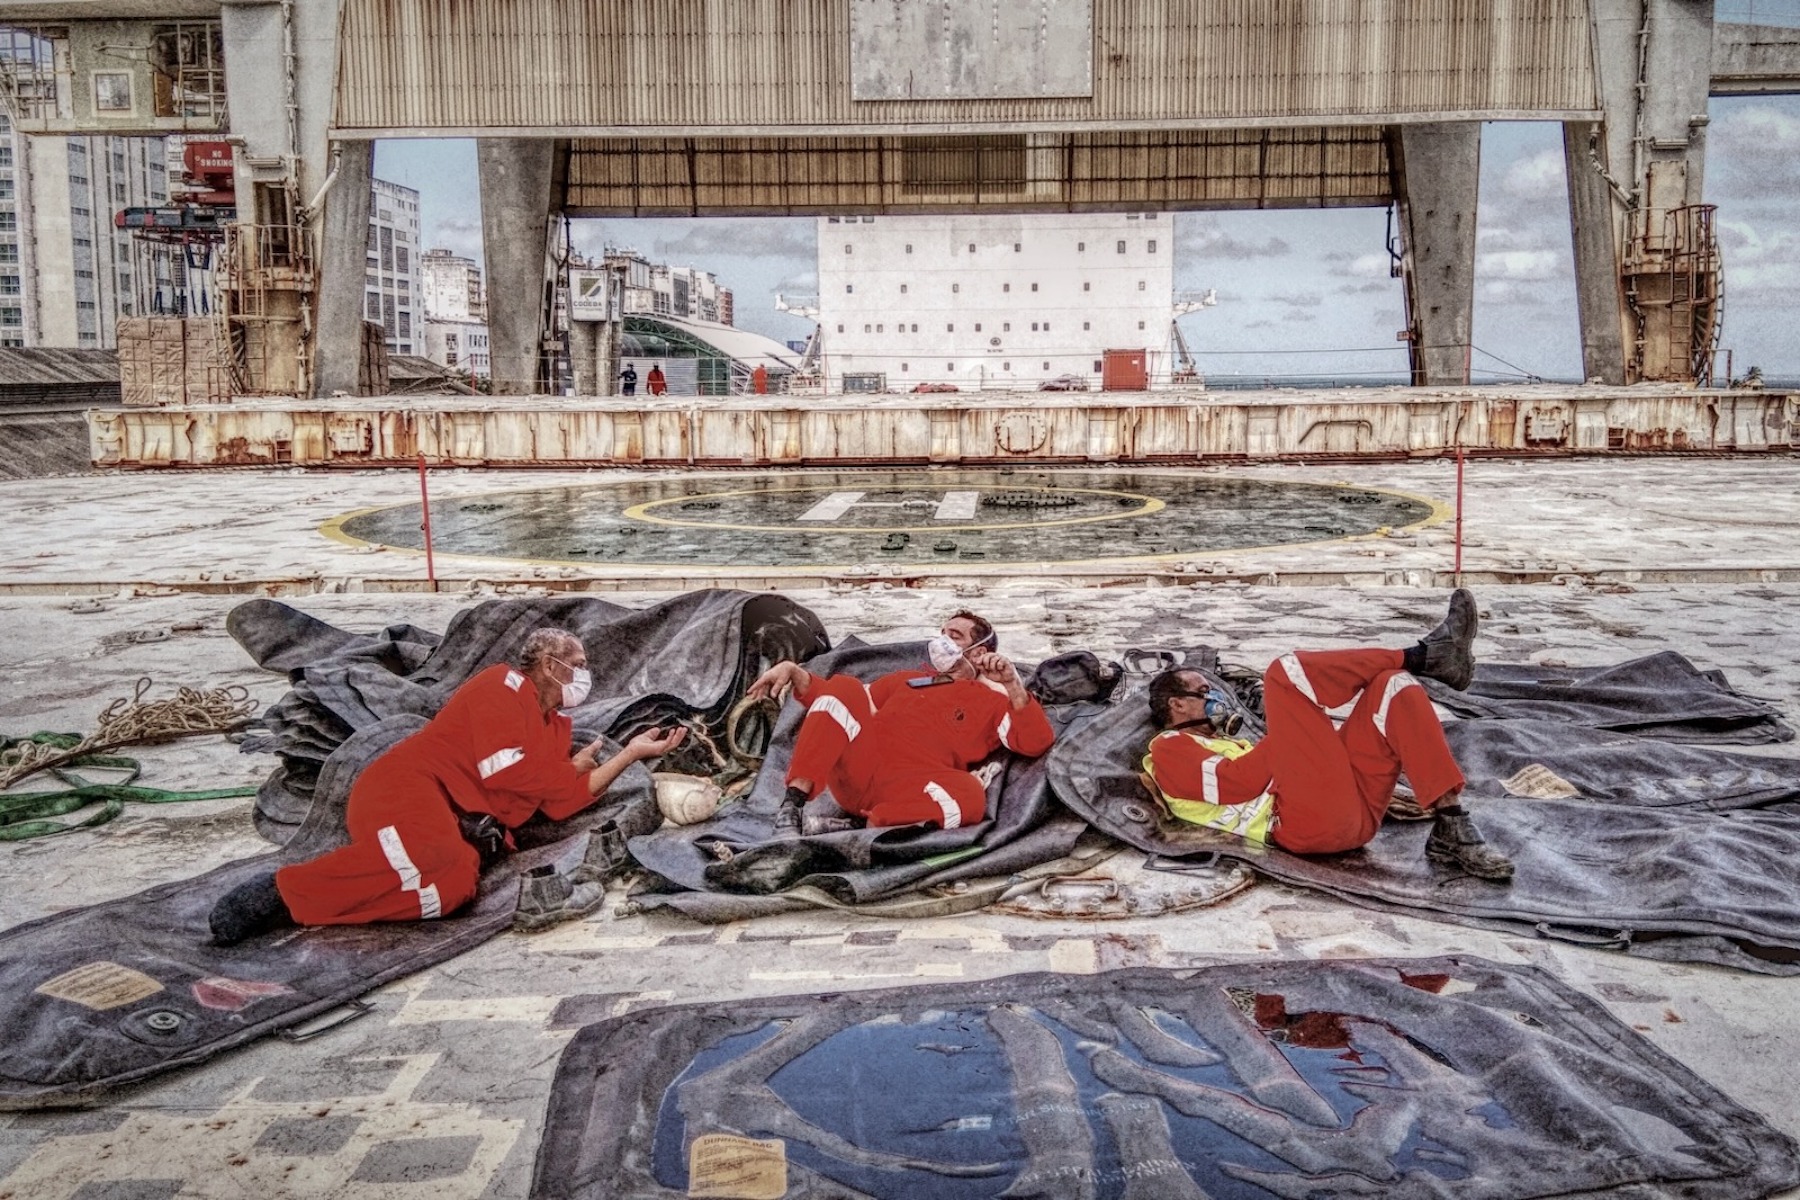 <p>Foto capturada durante una operación de carga en Salvador (Brasil), un epicentro de la pandemia. Tres estibadores acostados sobre una bolsa de aire descansando.</p>
<p>Fecha de la foto: 26/08/2020<br />Ubicación de la foto: Salvador, Brasil.<br />Nombre del buque: Mv Hardanger.<br />Nombre del marinero: Philip Erl.</p>